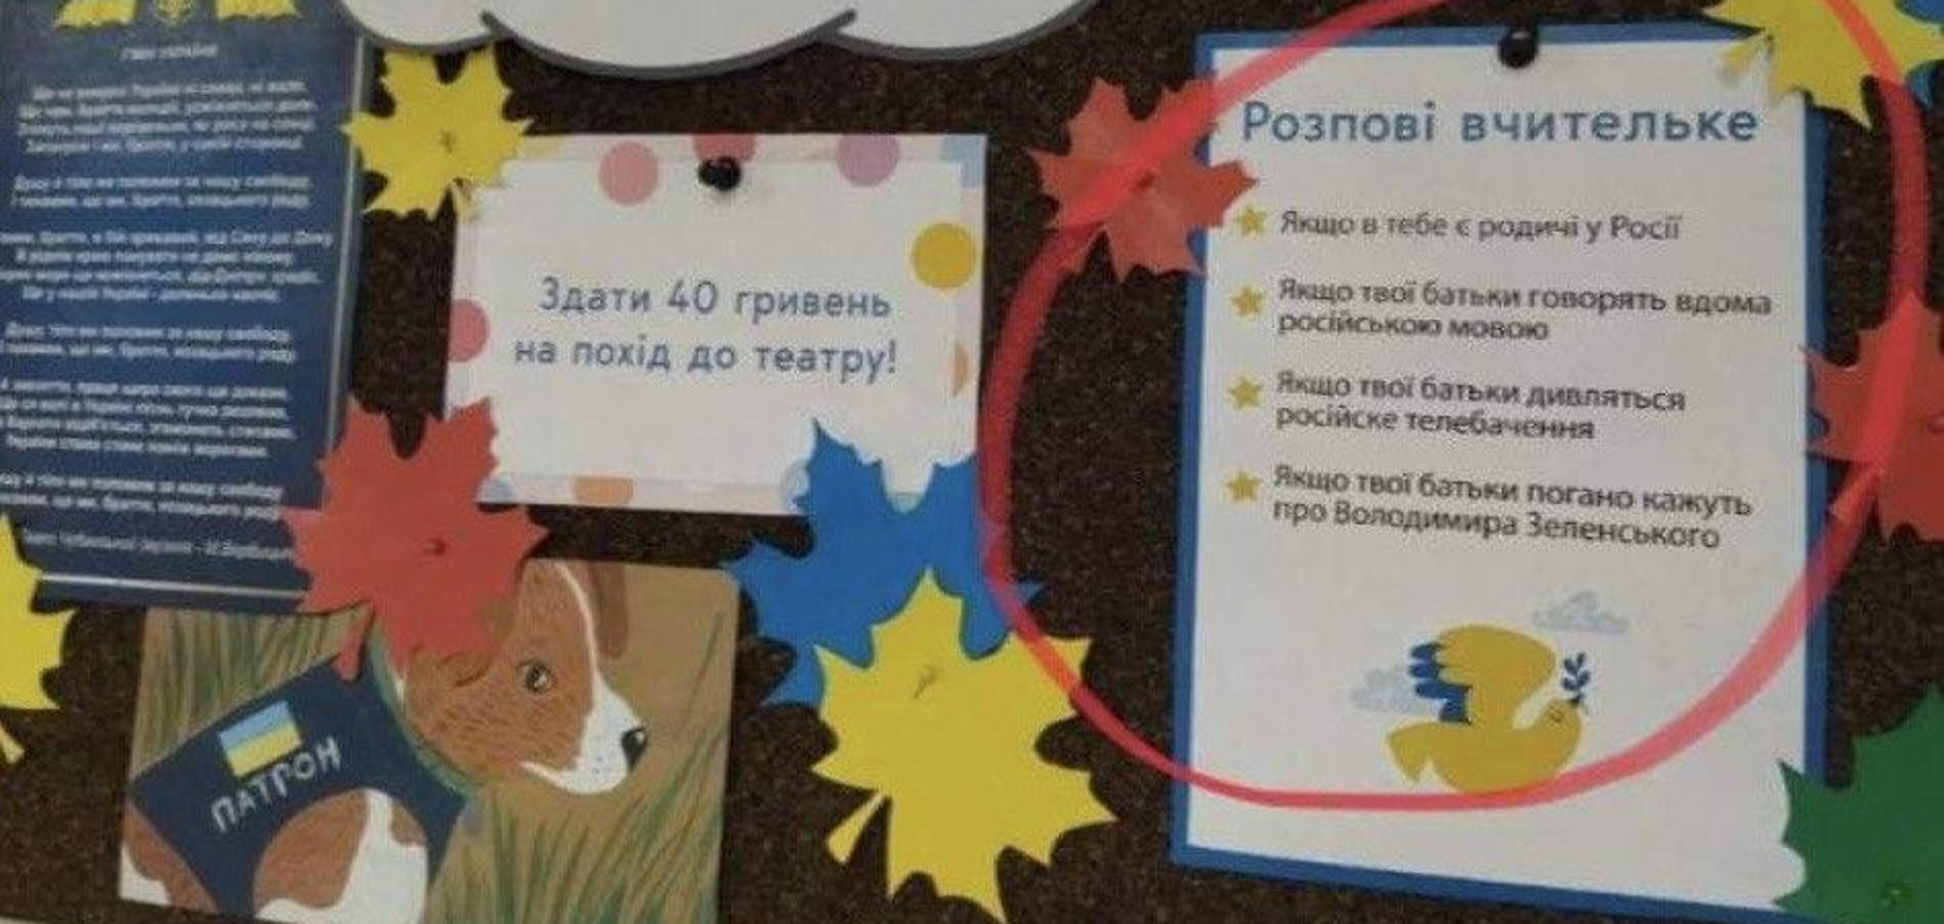 'Розпові вчительке': российская пропаганда опять опозорилась с фейком, и теперь ее все троллят